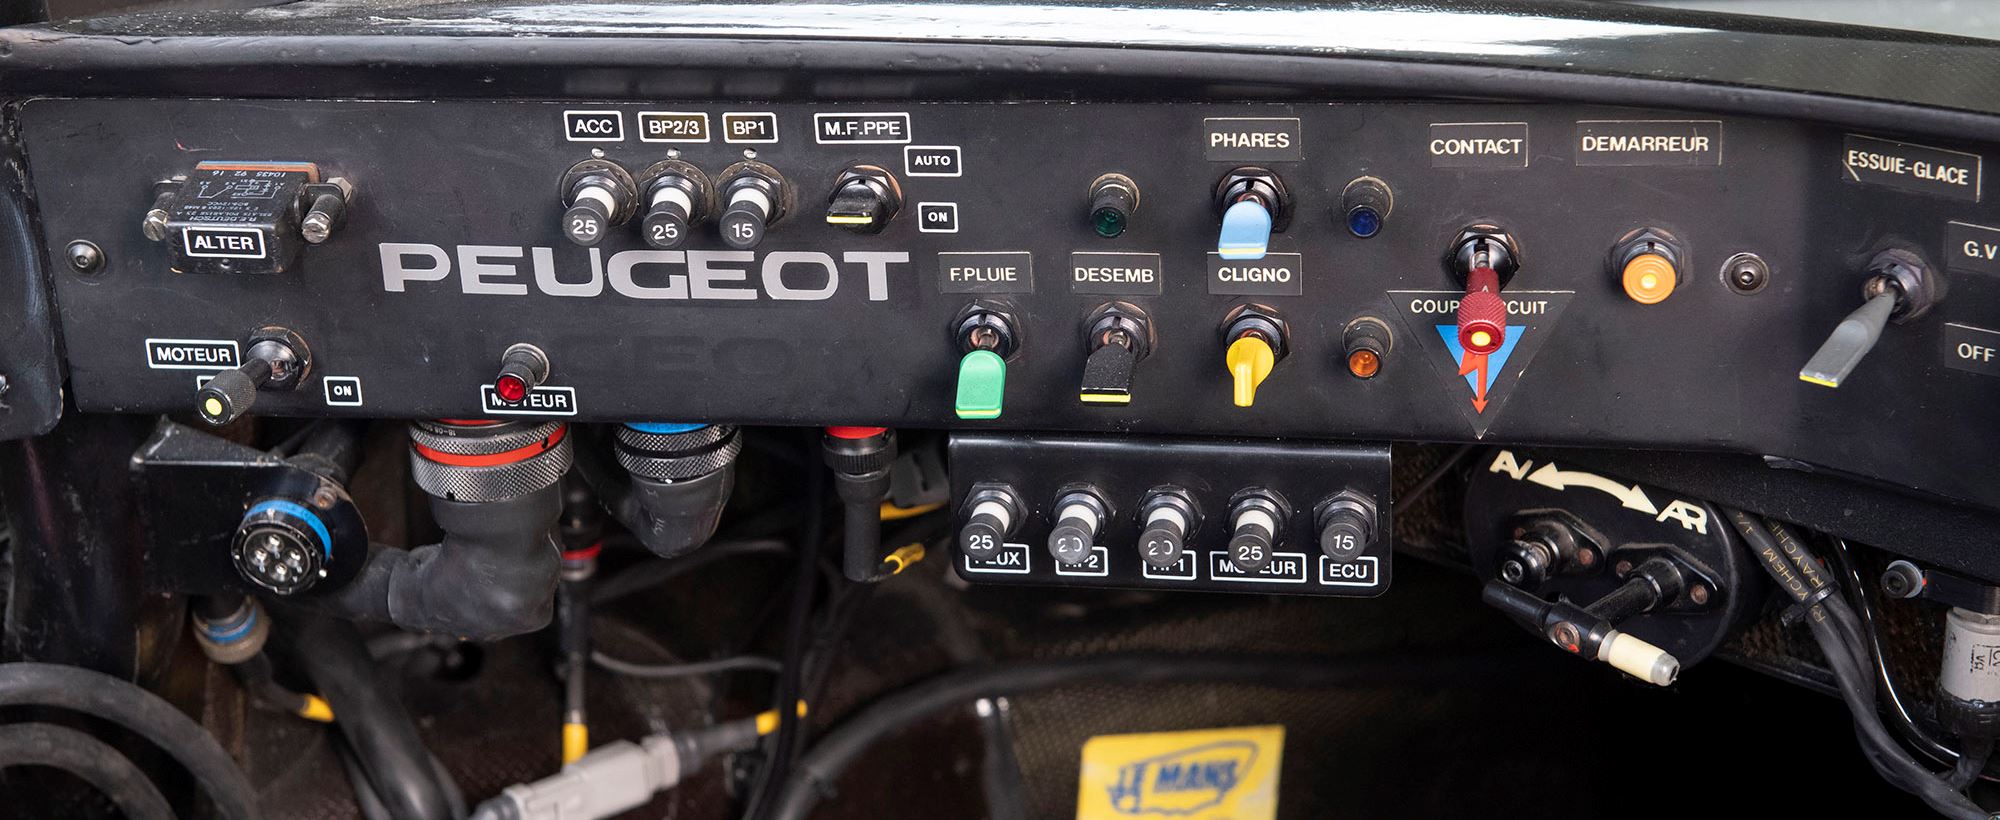 Peugeot 905 032.jpg